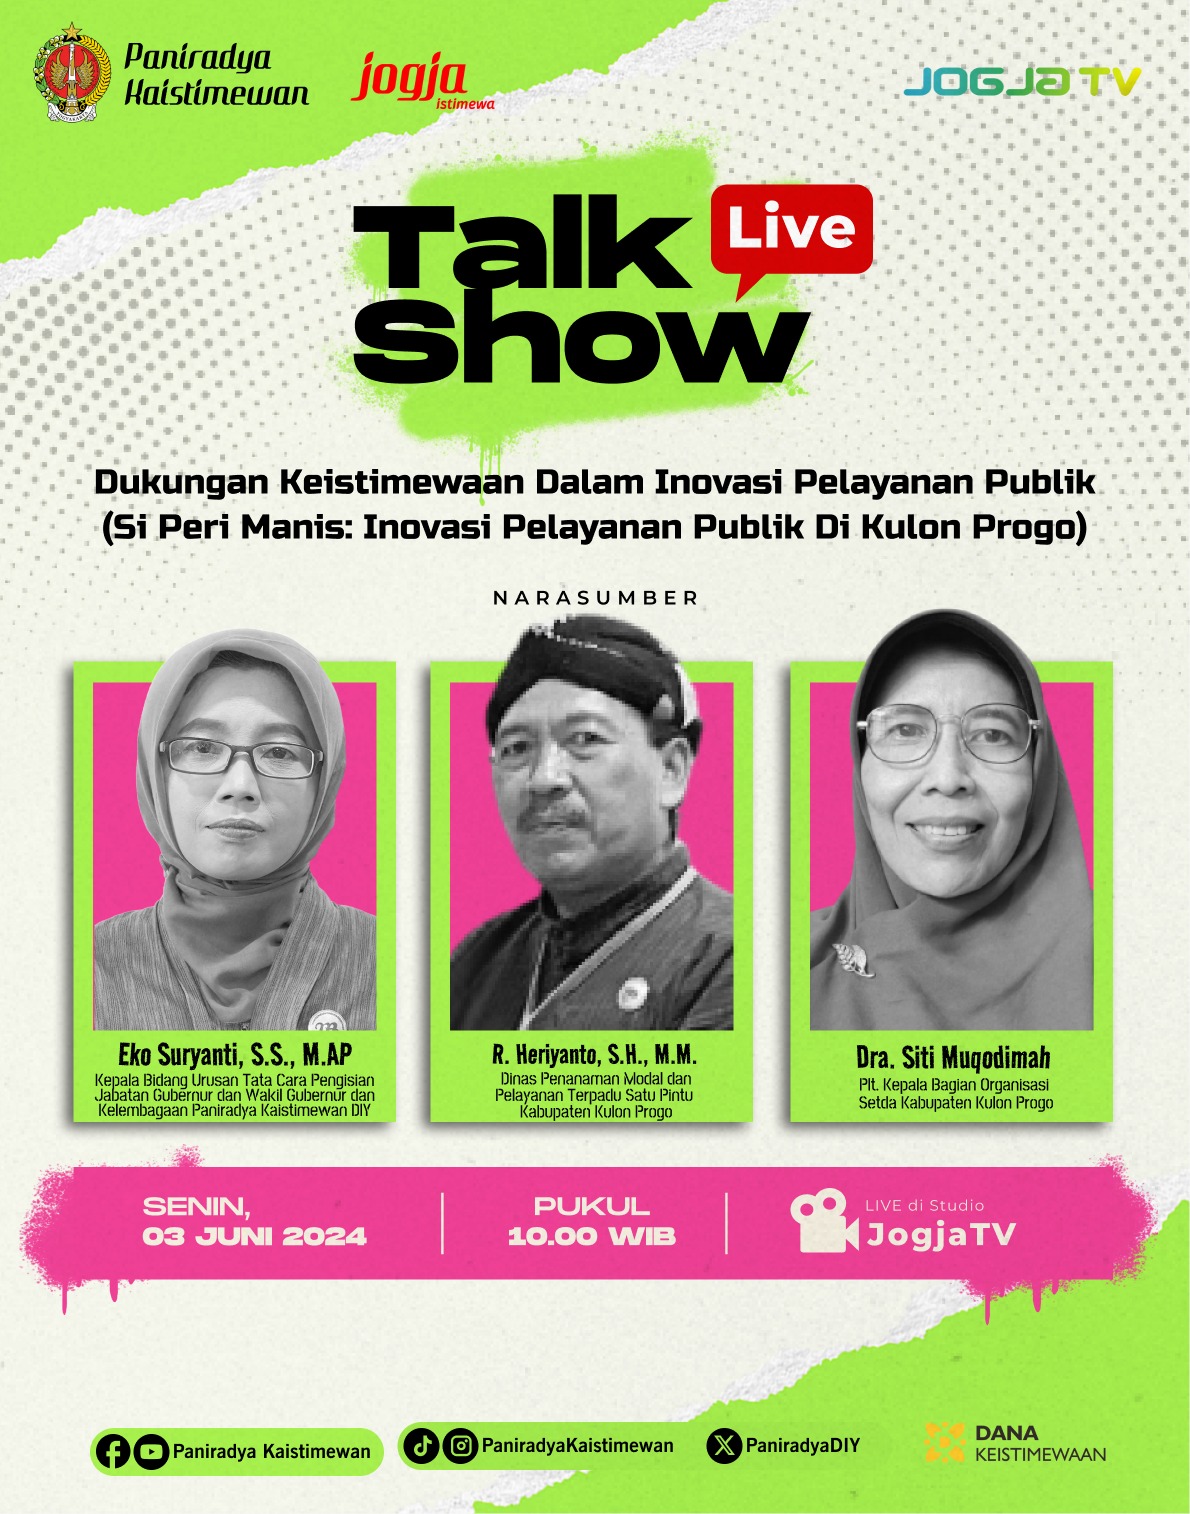 Live Talkshow - Dukungan Keistimewaan Dalam Inovasi Pelayanan Publik (Si Peri Manis: Inovasi Pelayanan Publik di Kulon Progo)